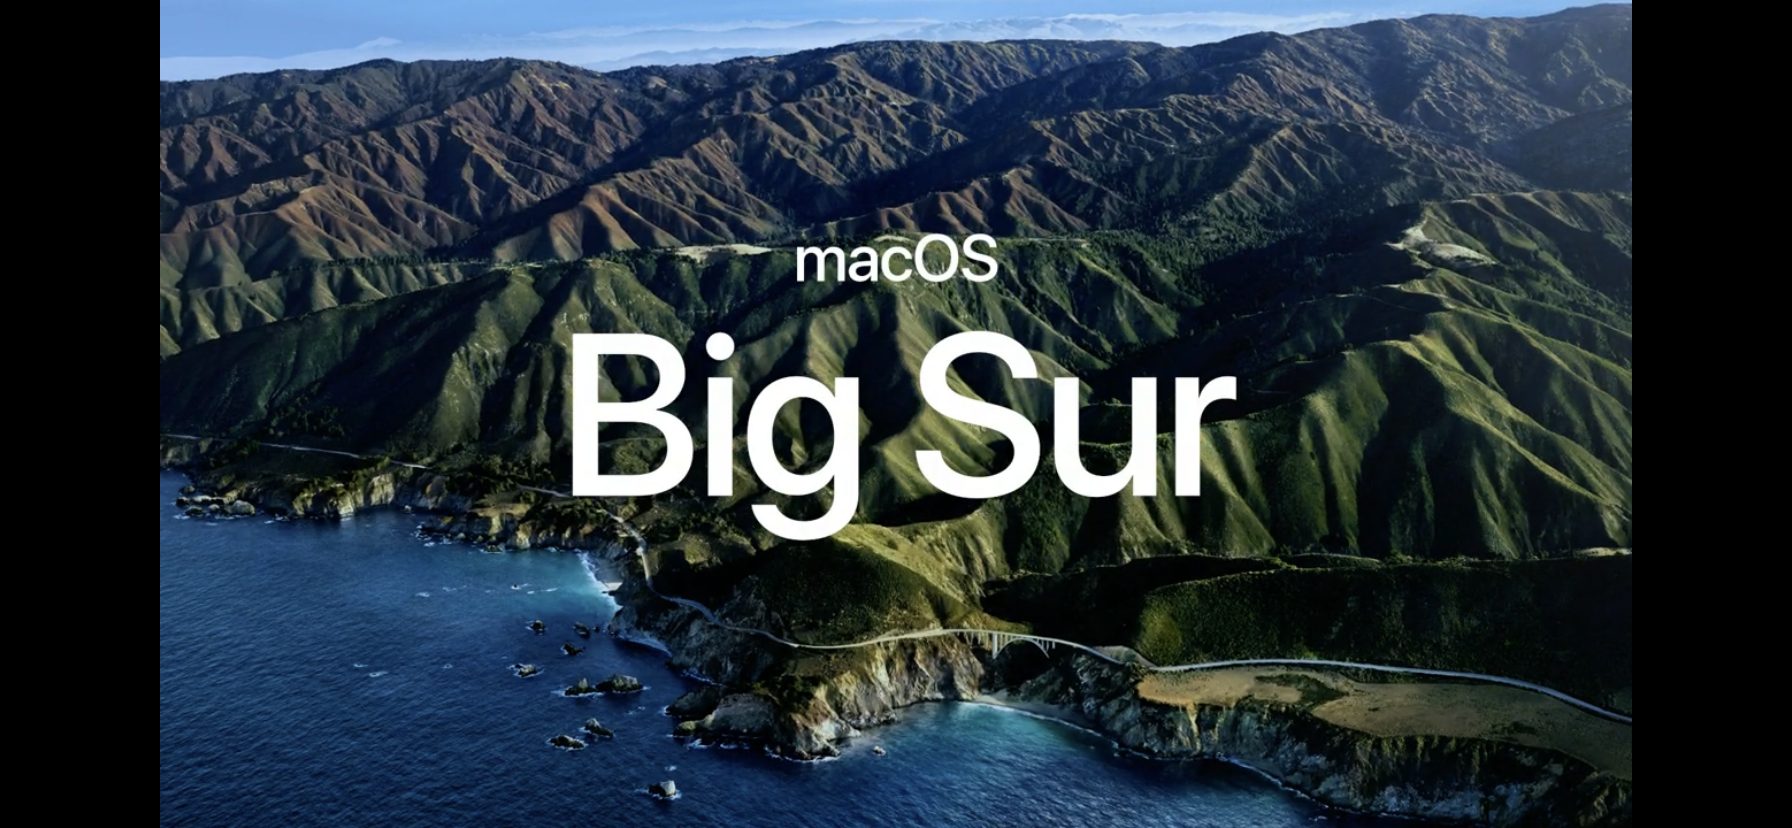 macOS Big Sur